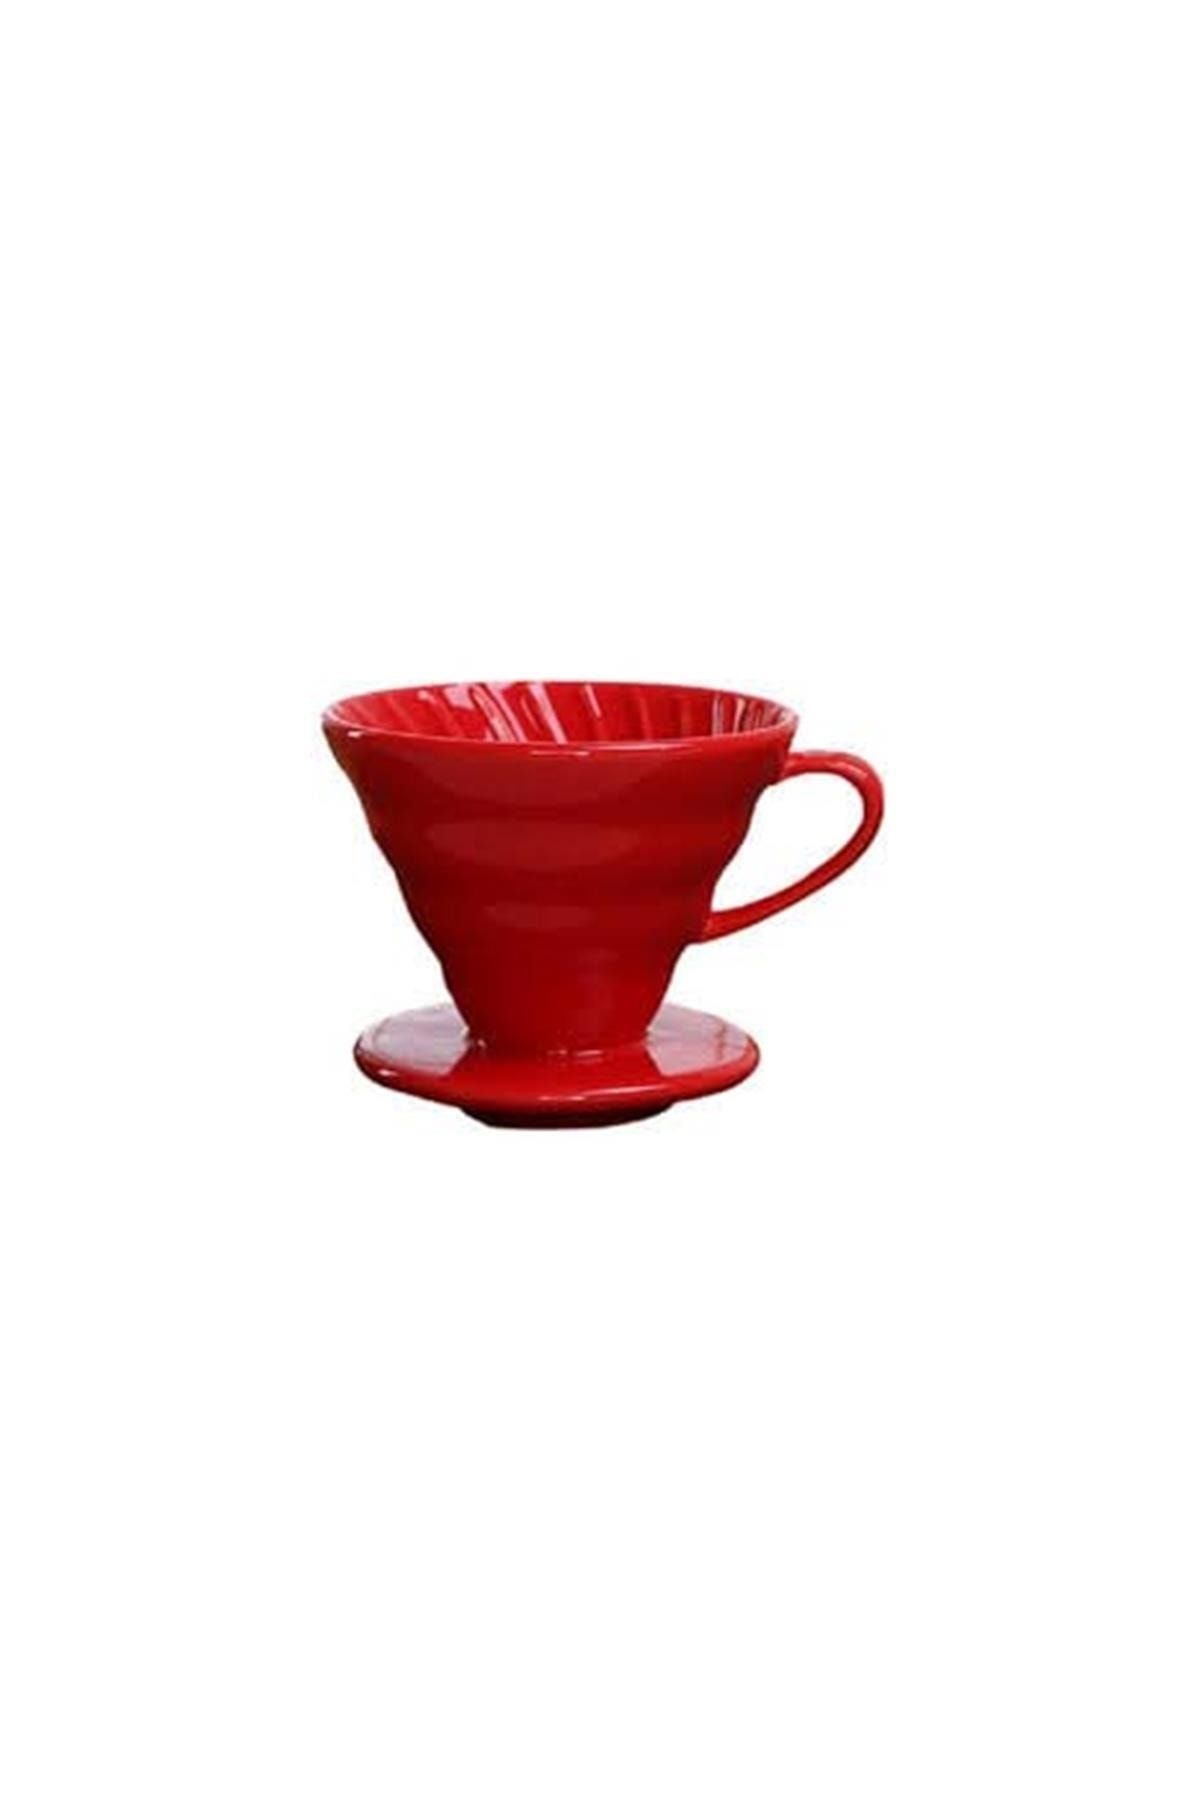 Genel Markalar V60 02 Kahve Demleme Aparatı Kırmızı Seramik